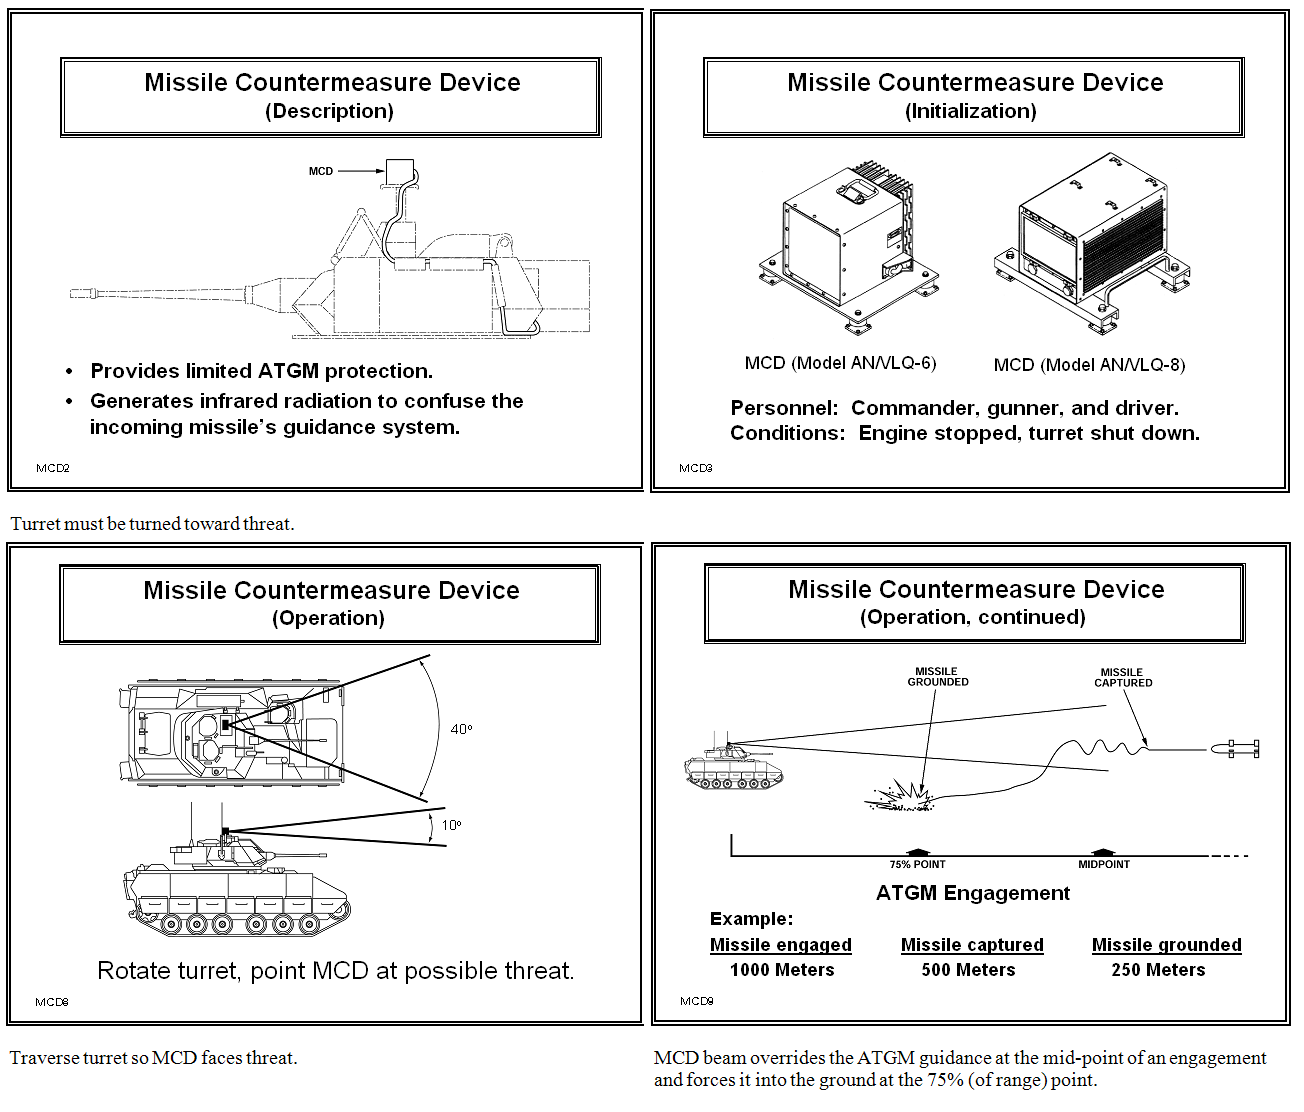 Rysunek przedstawia sposób montażu oraz działania systemów aktywnej obrony AN/VLQ-6 i AN/VLQ-8 MCD/Źródło: Internet